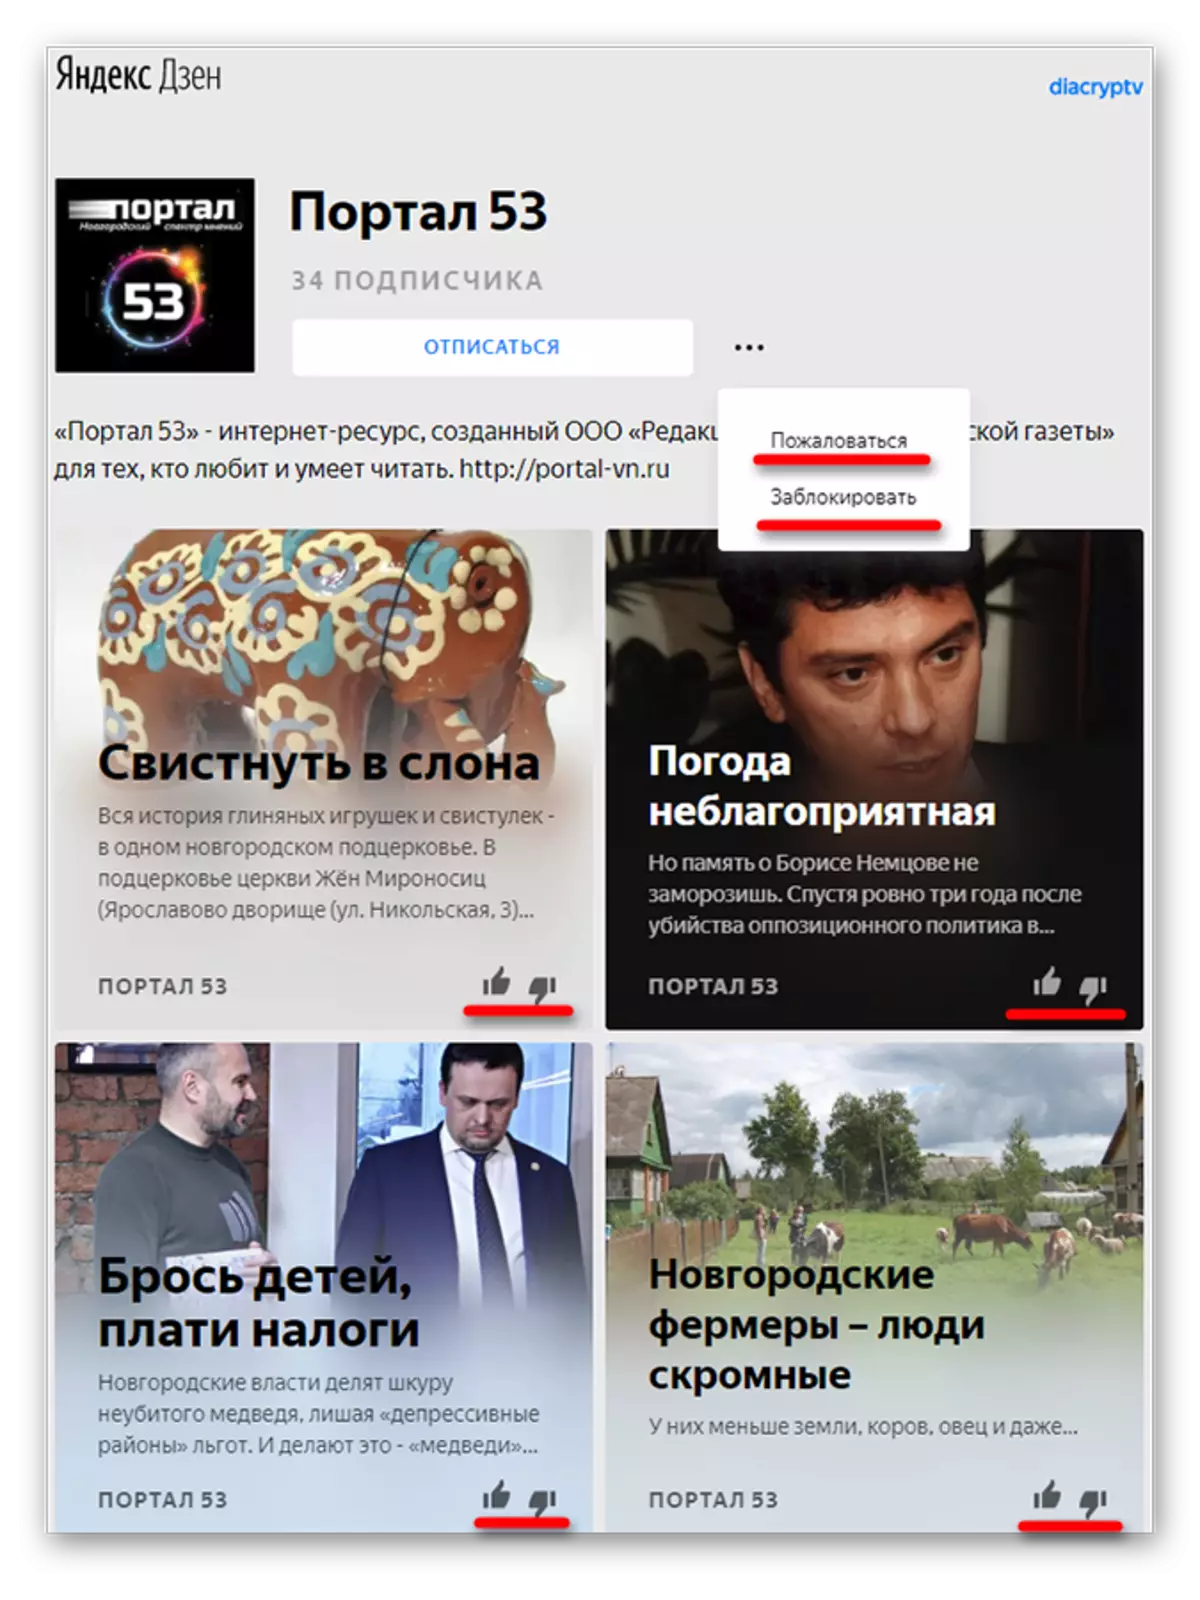 Canal News Bands am Yandex.dzen